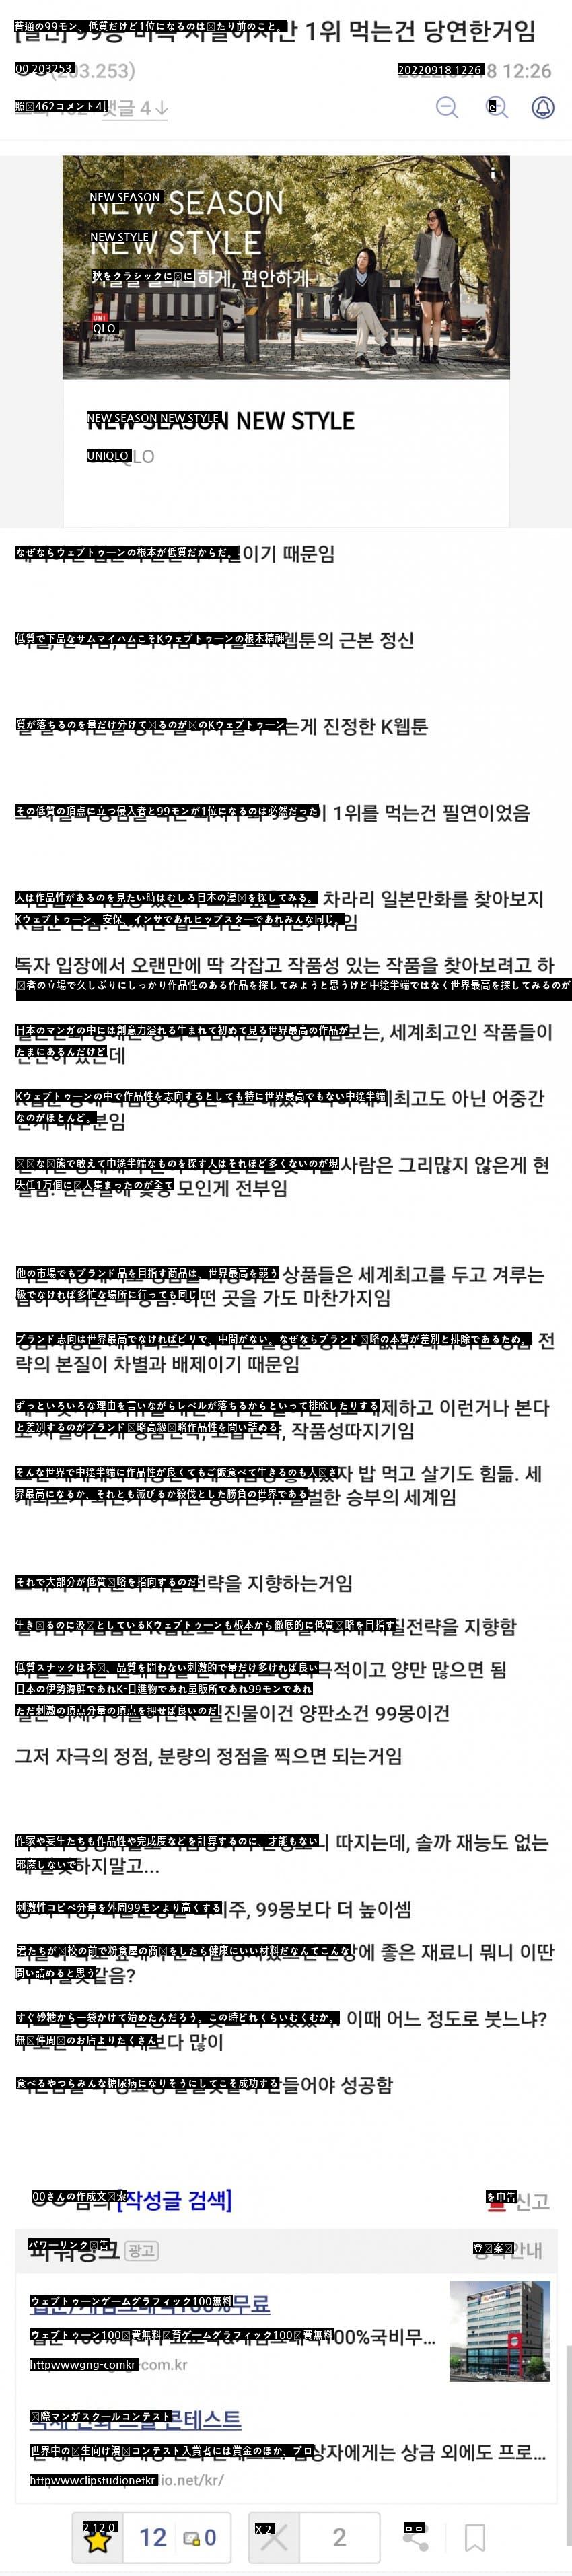 ●韓国のウェブトゥーンが質的に下落している理由